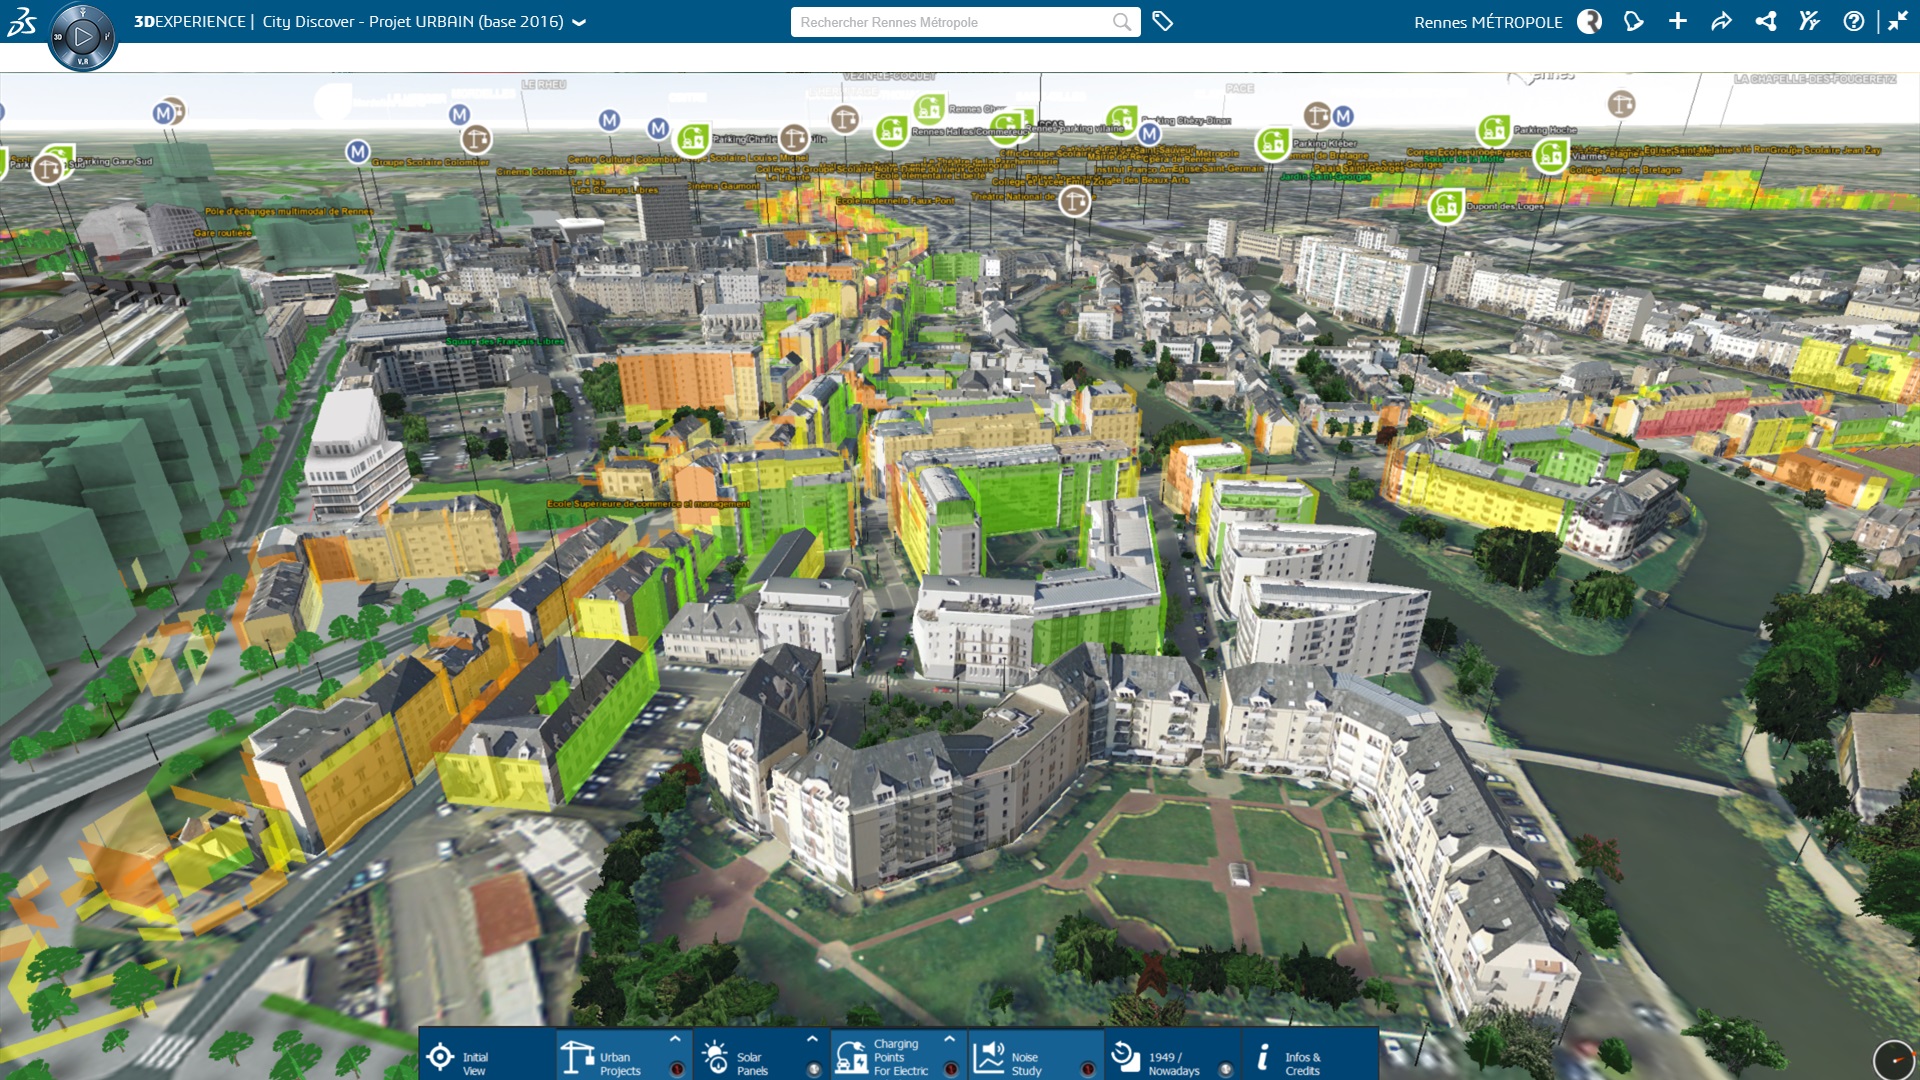 La ciudad francesa Rennes crea su modelo digital en 3D con Dassault Systèmes